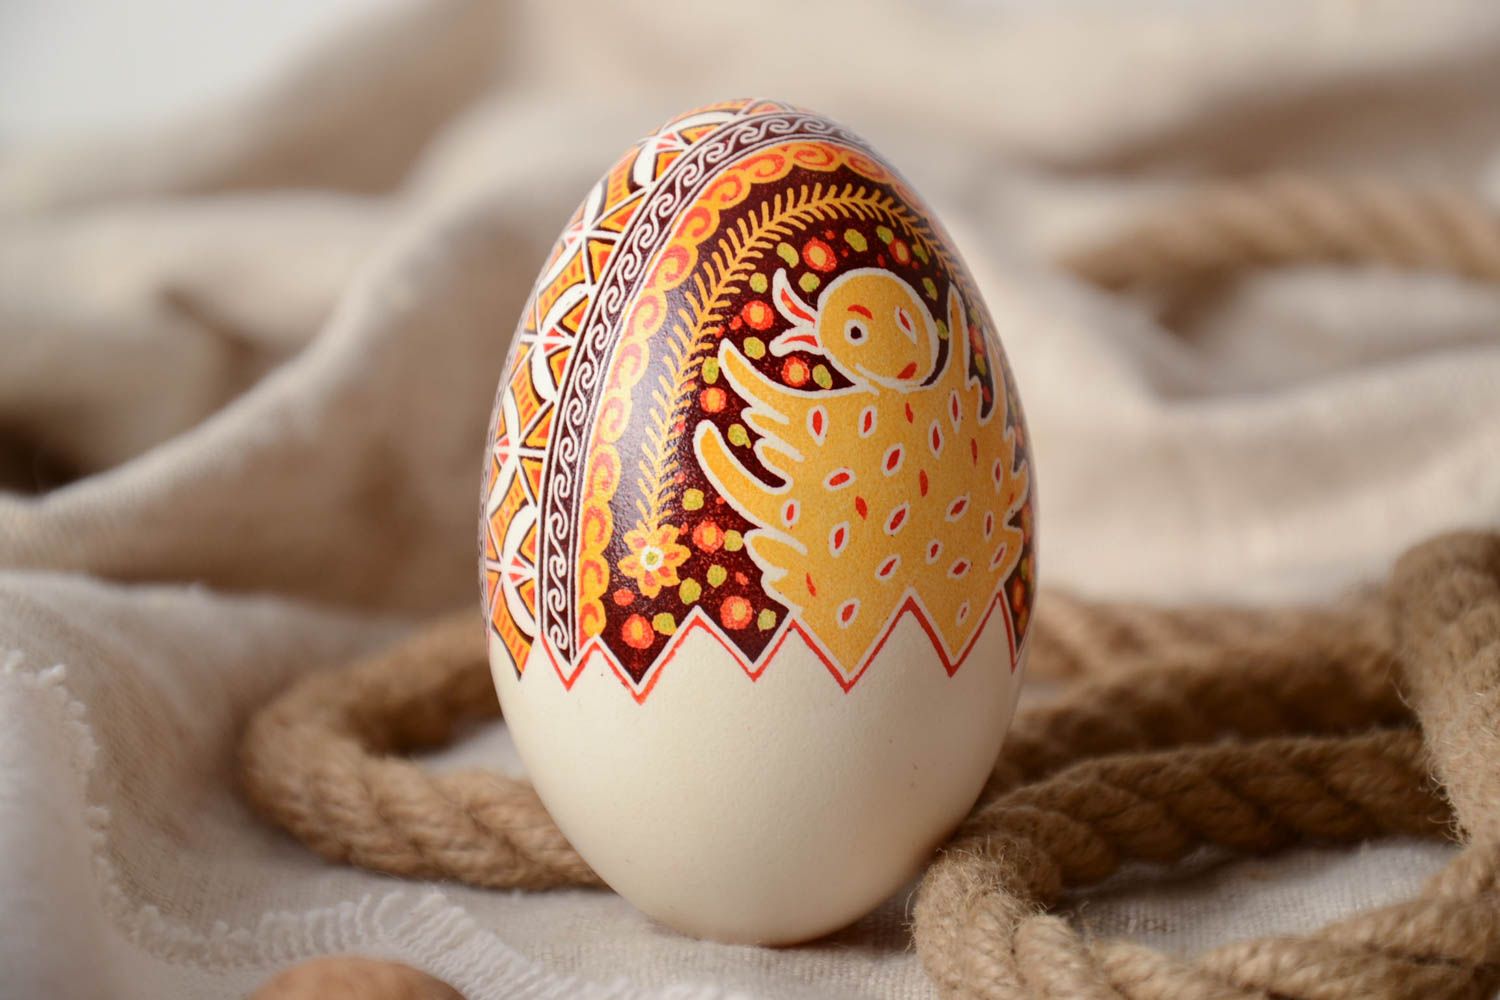 Пасхальное яйцо гусиное расписанное в восковой технике  анилиновыми красками фото 1